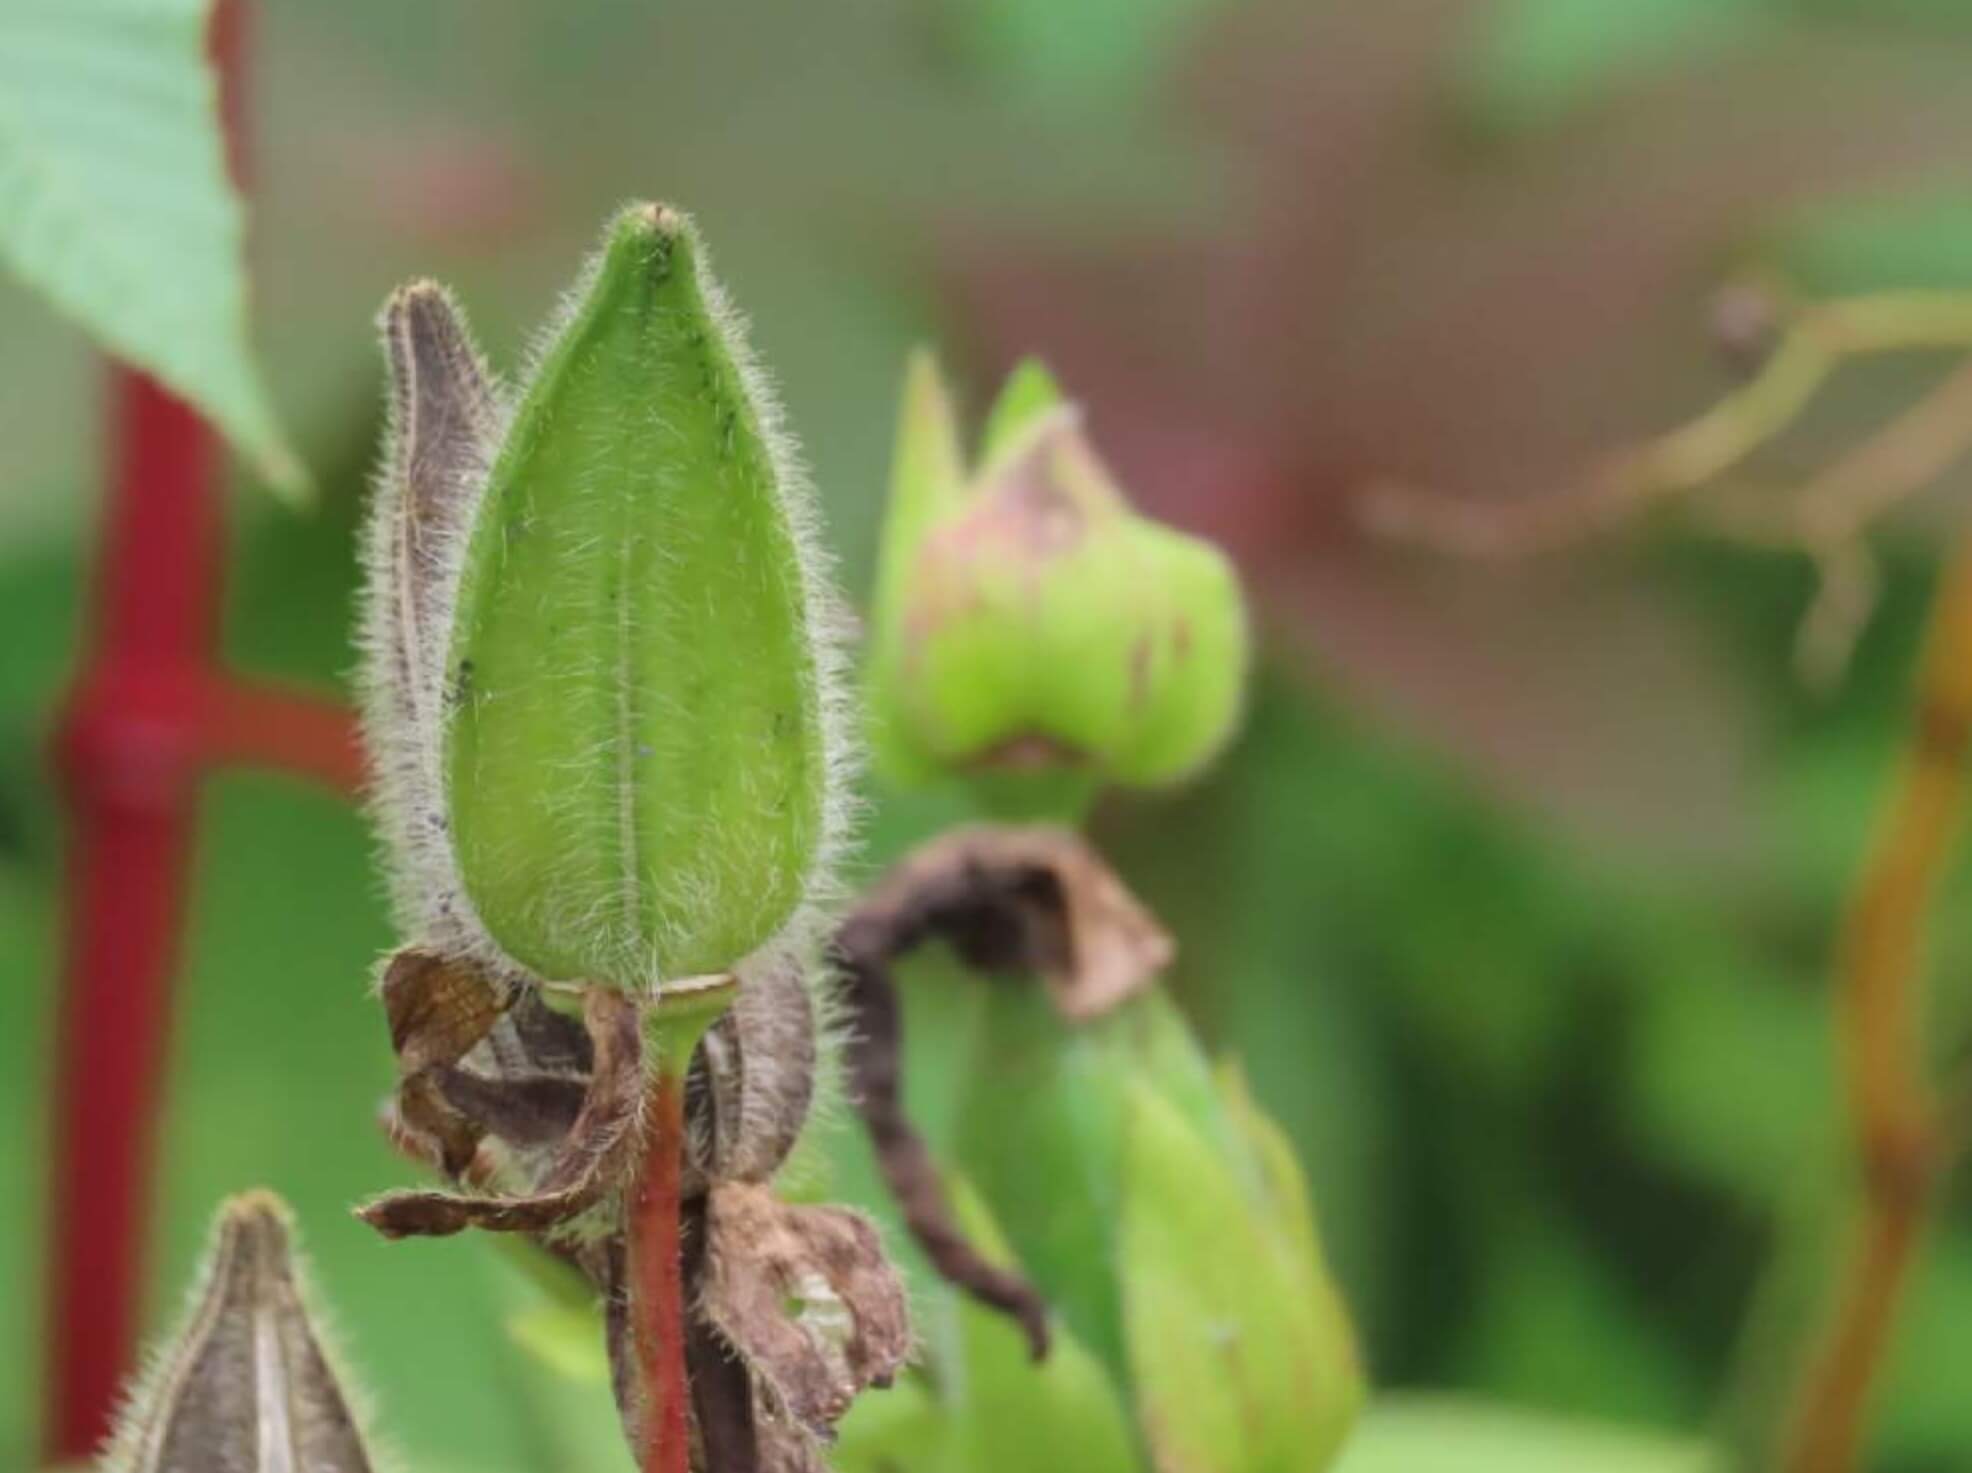 花オクラ トロロアオイ 黄蜀葵 の育て方 植え付けの時期や種まきでの増やし方 実は食べられる Greensnap グリーンスナップ